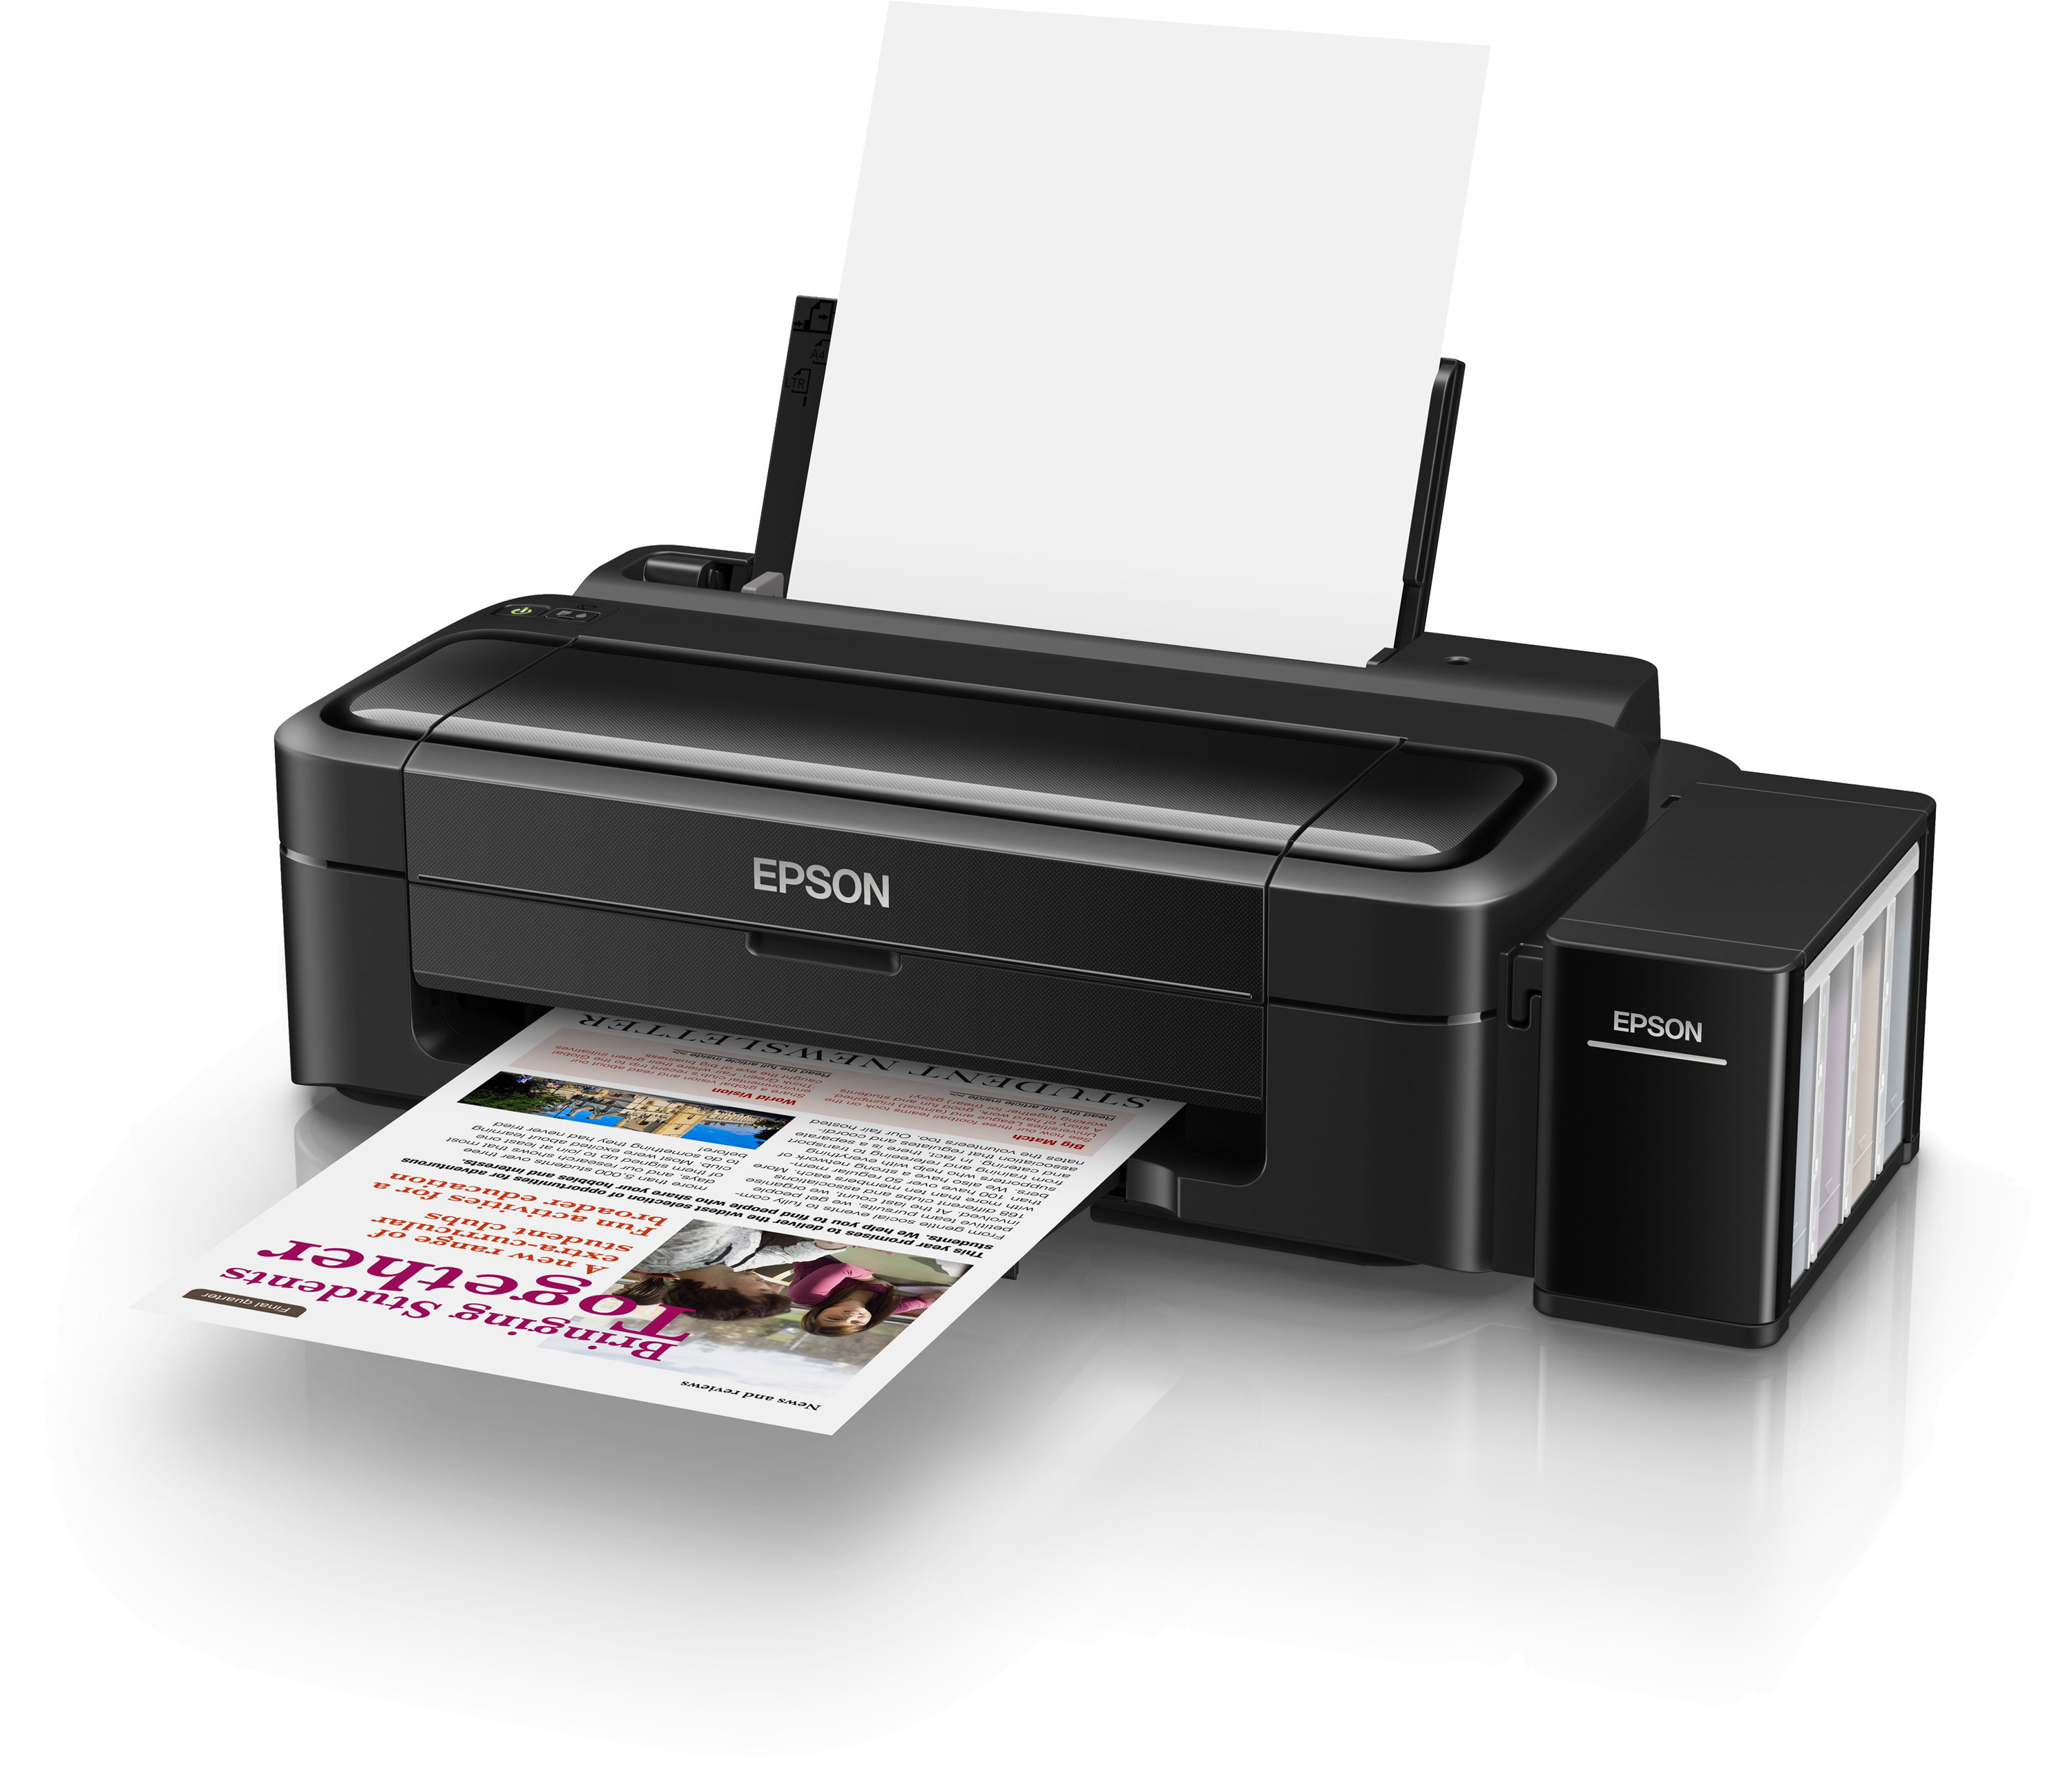 Купить принтер в м видео. Принтер Эпсон l132. Принтер Epson l3100. Принтер струйный Epson l132. Epson l1110.